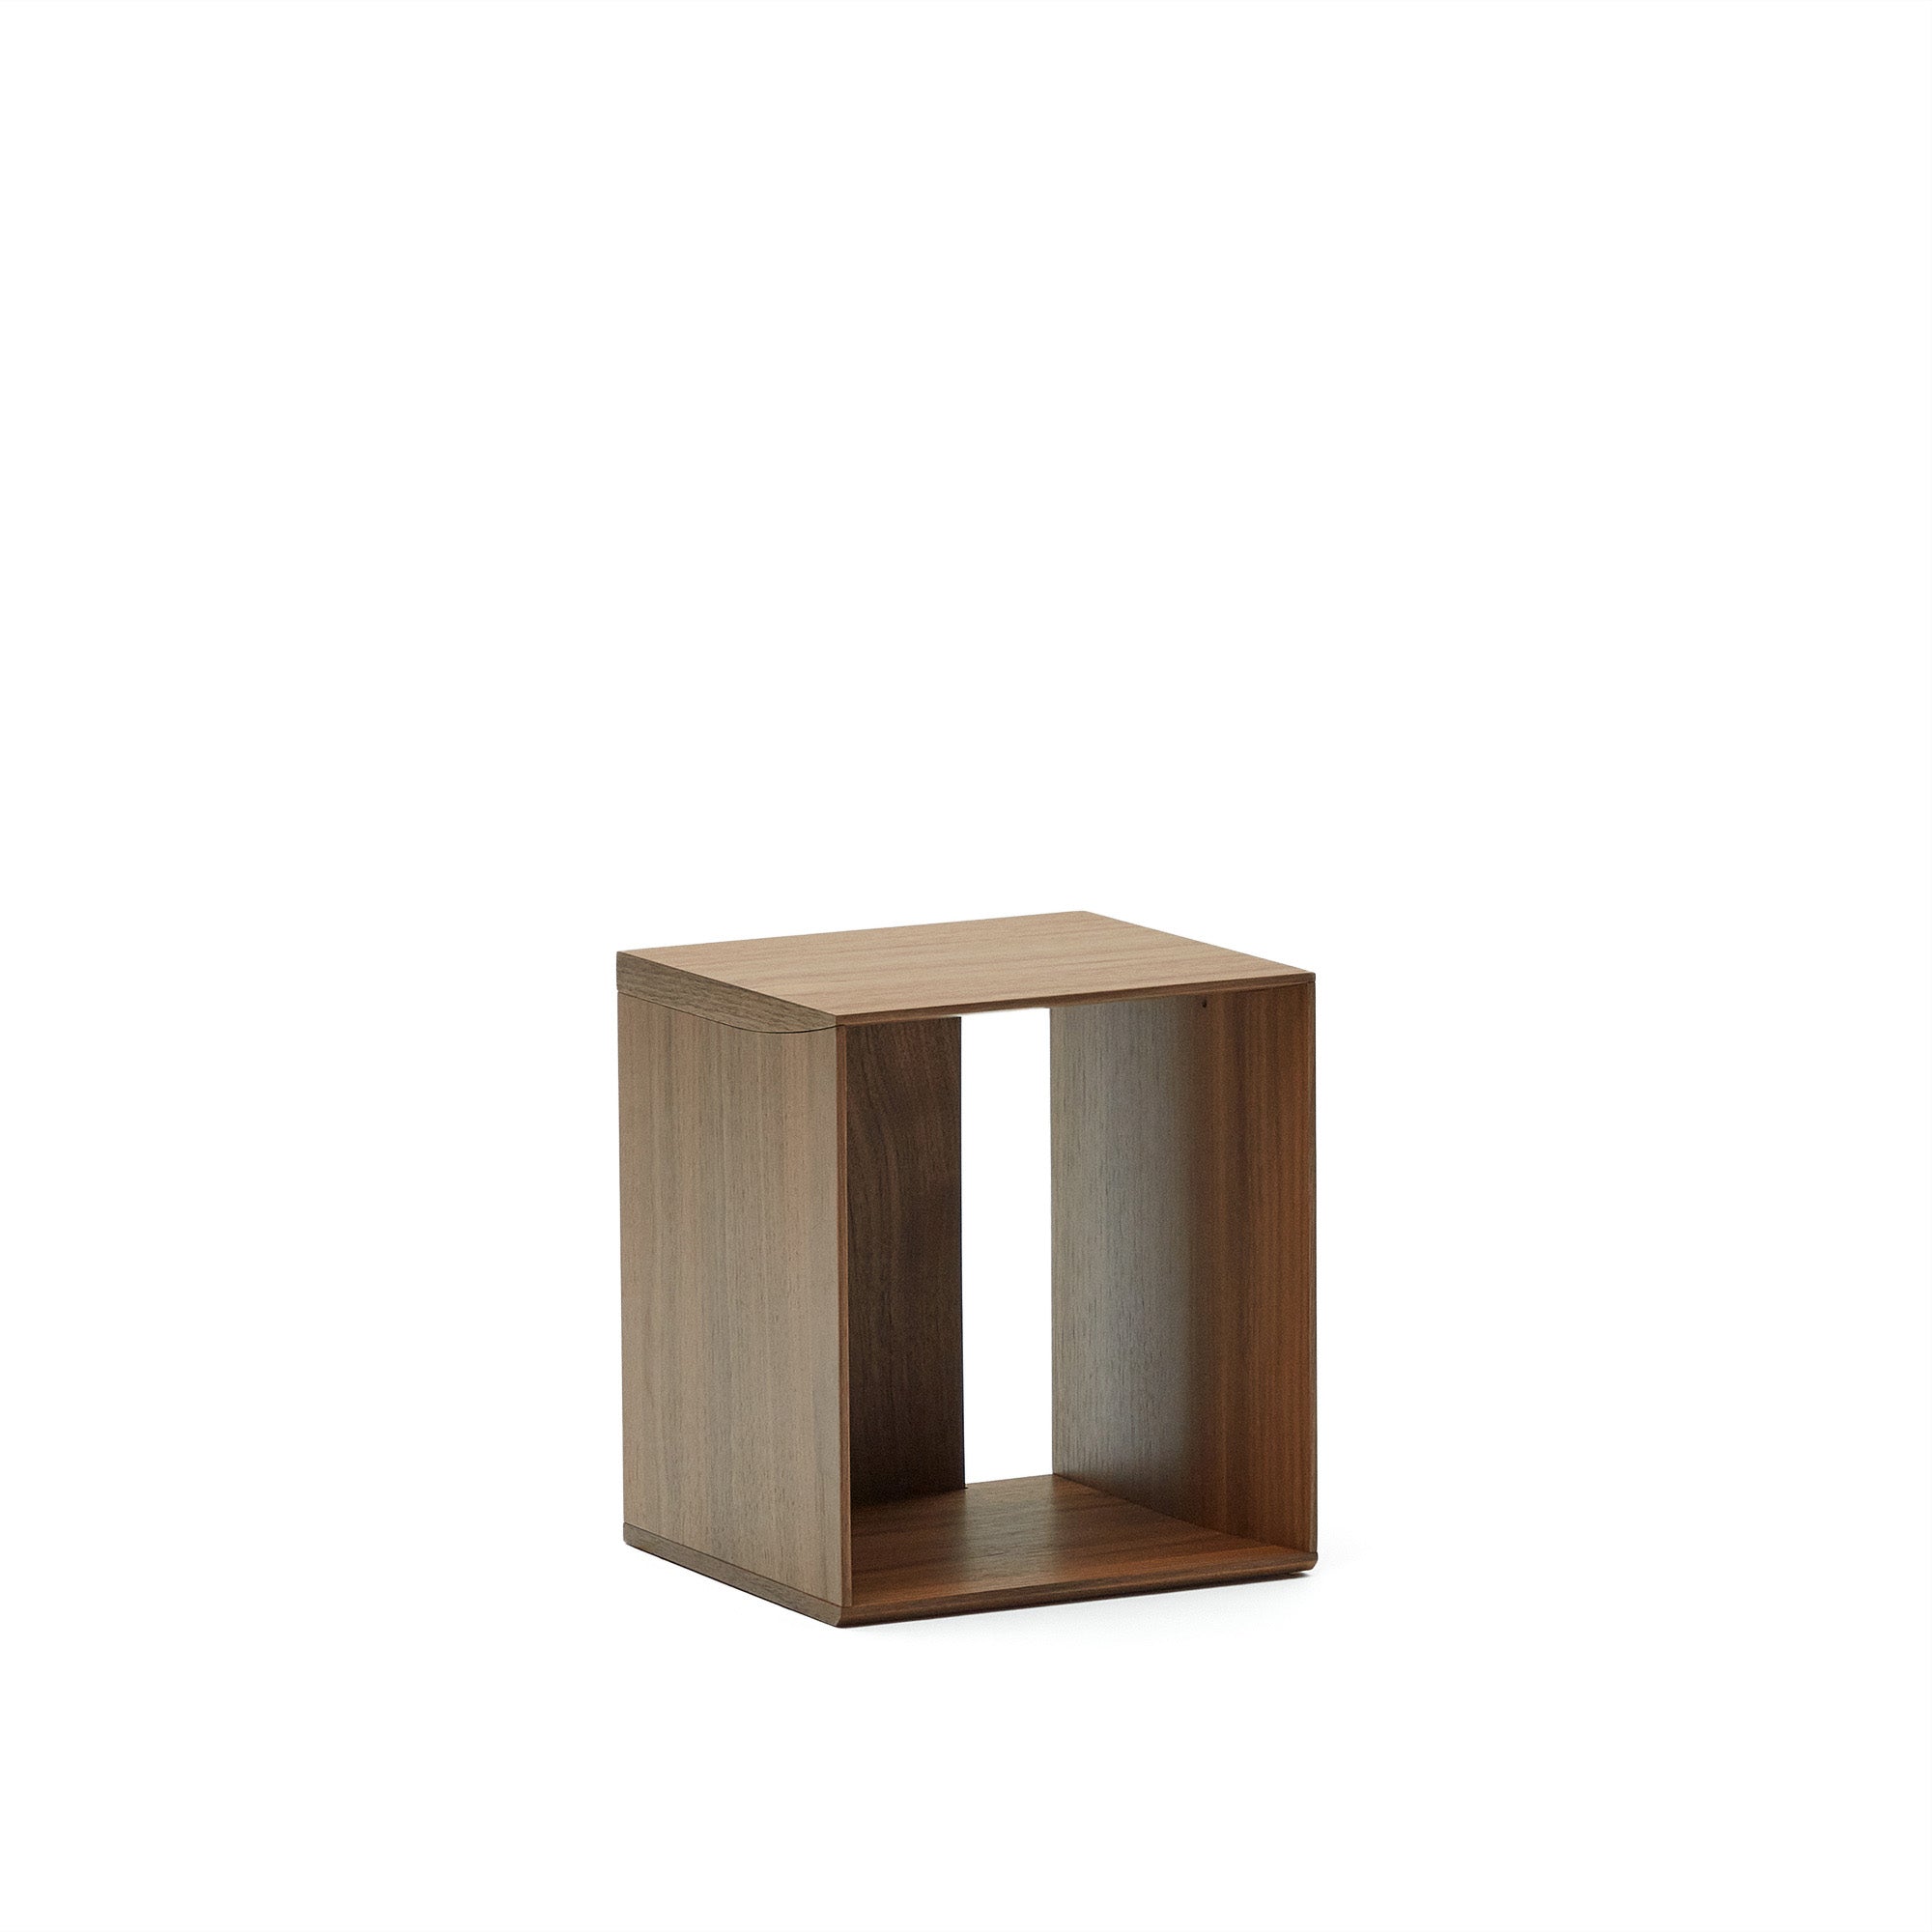 Litto small shelf module in walnut veneer, 34 x 38 cm